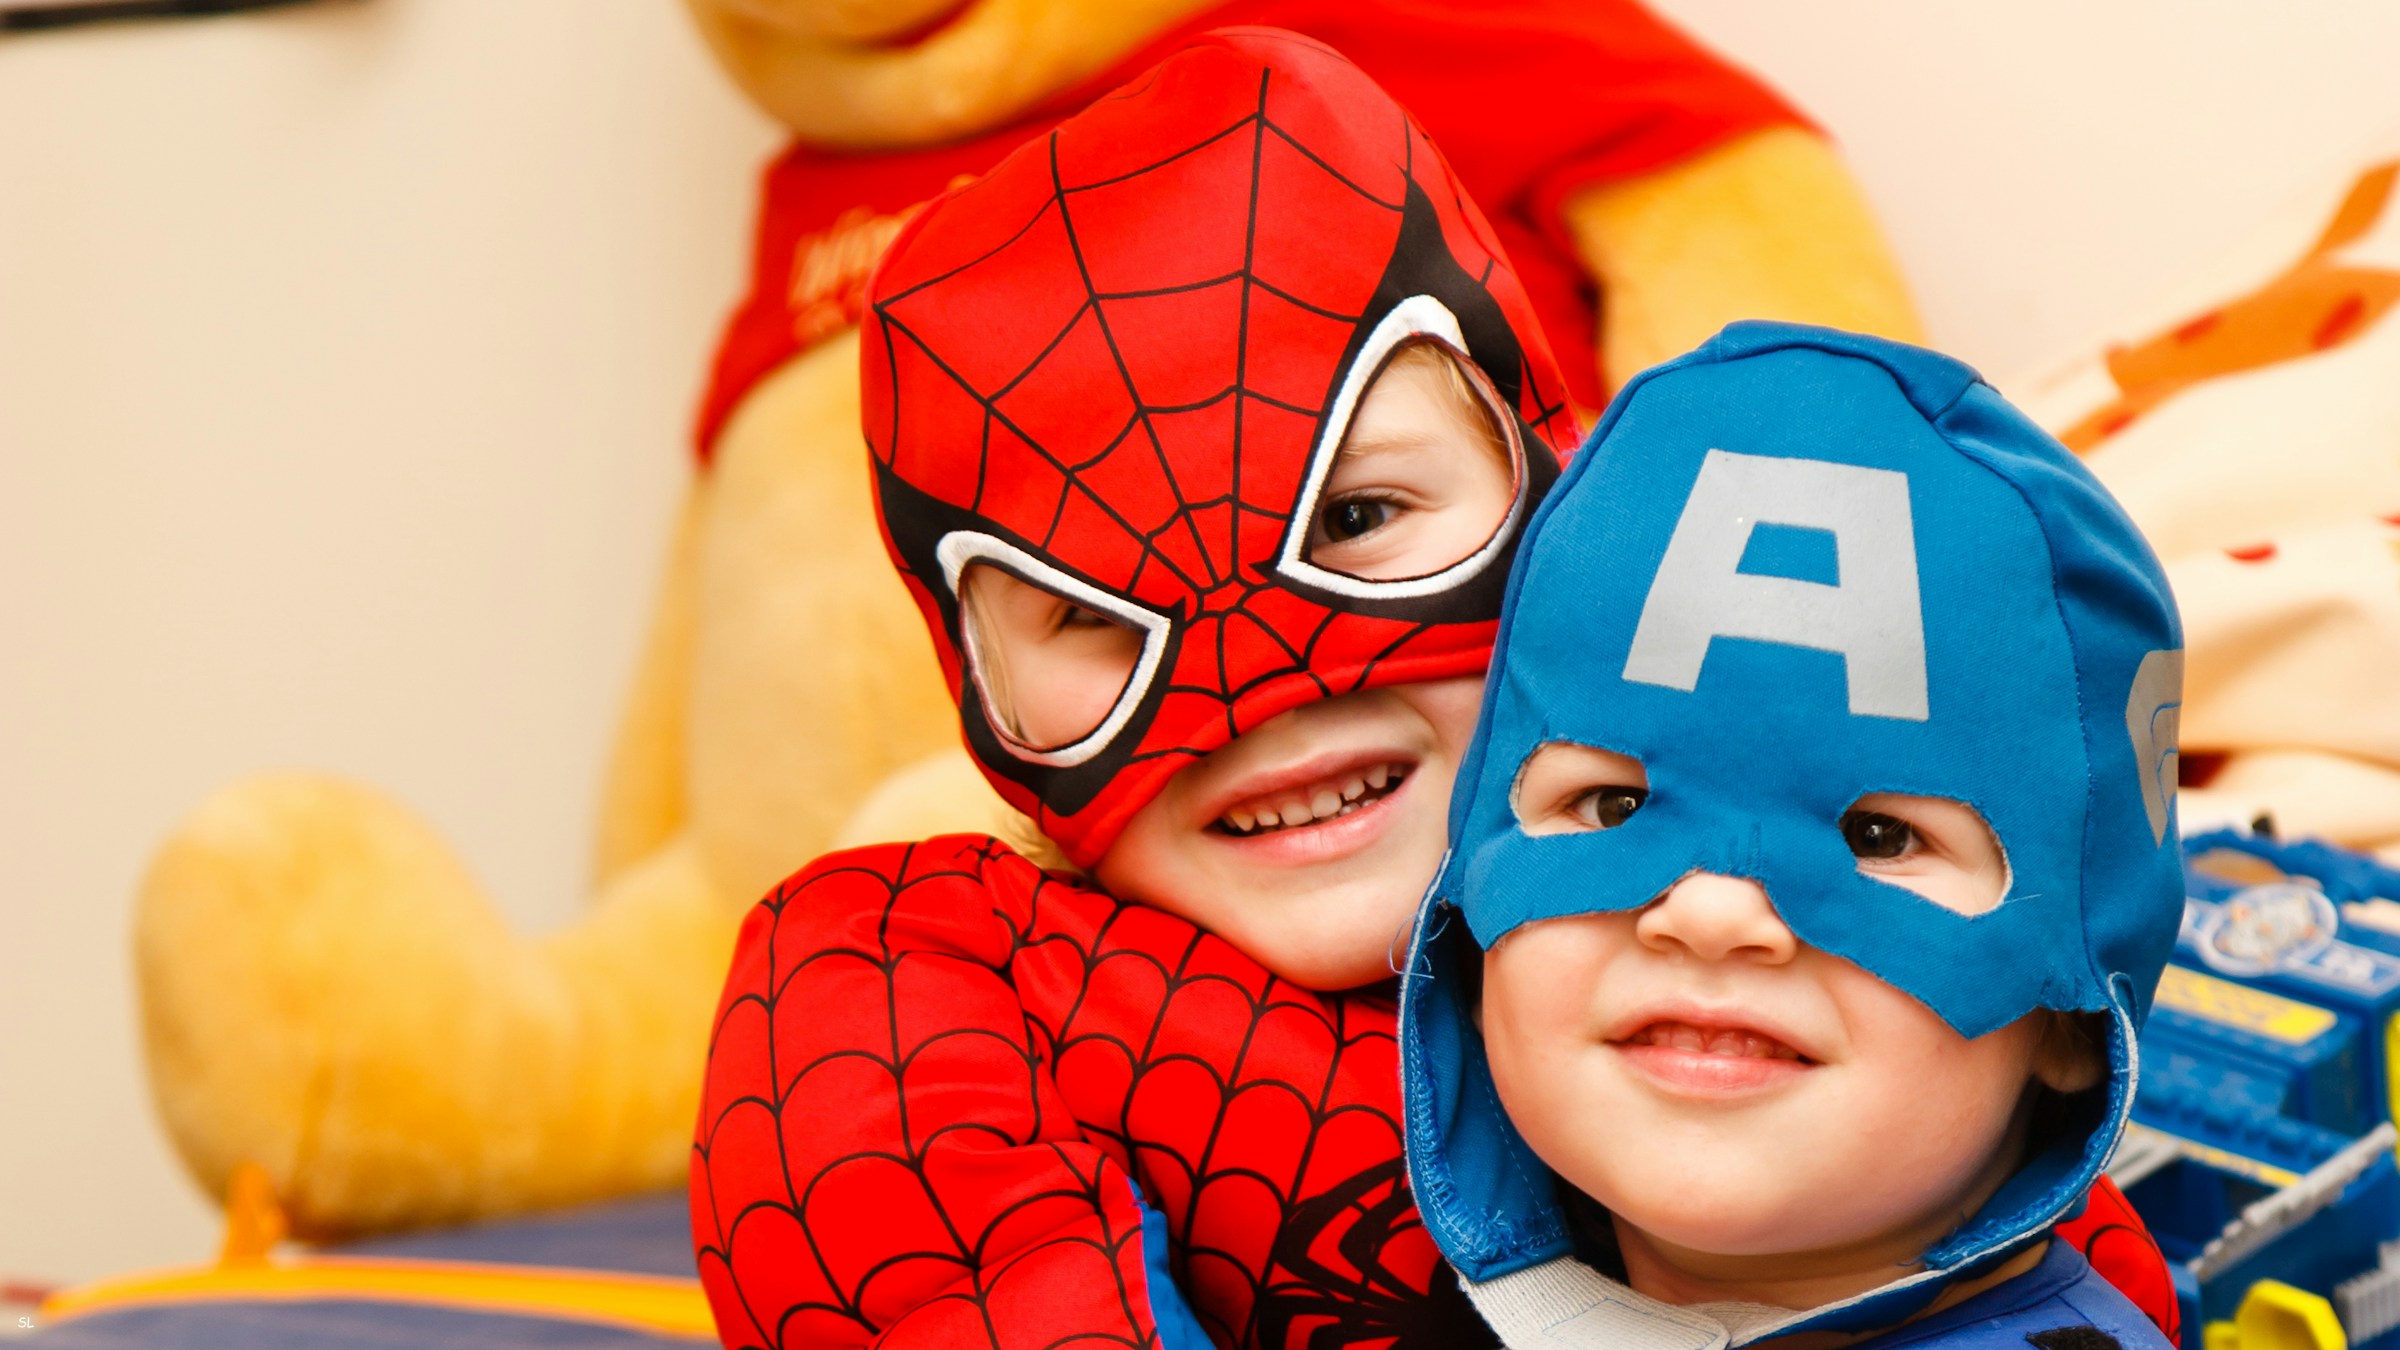 Kinder als Superhelden verkleidet | Quelle: Unsplash